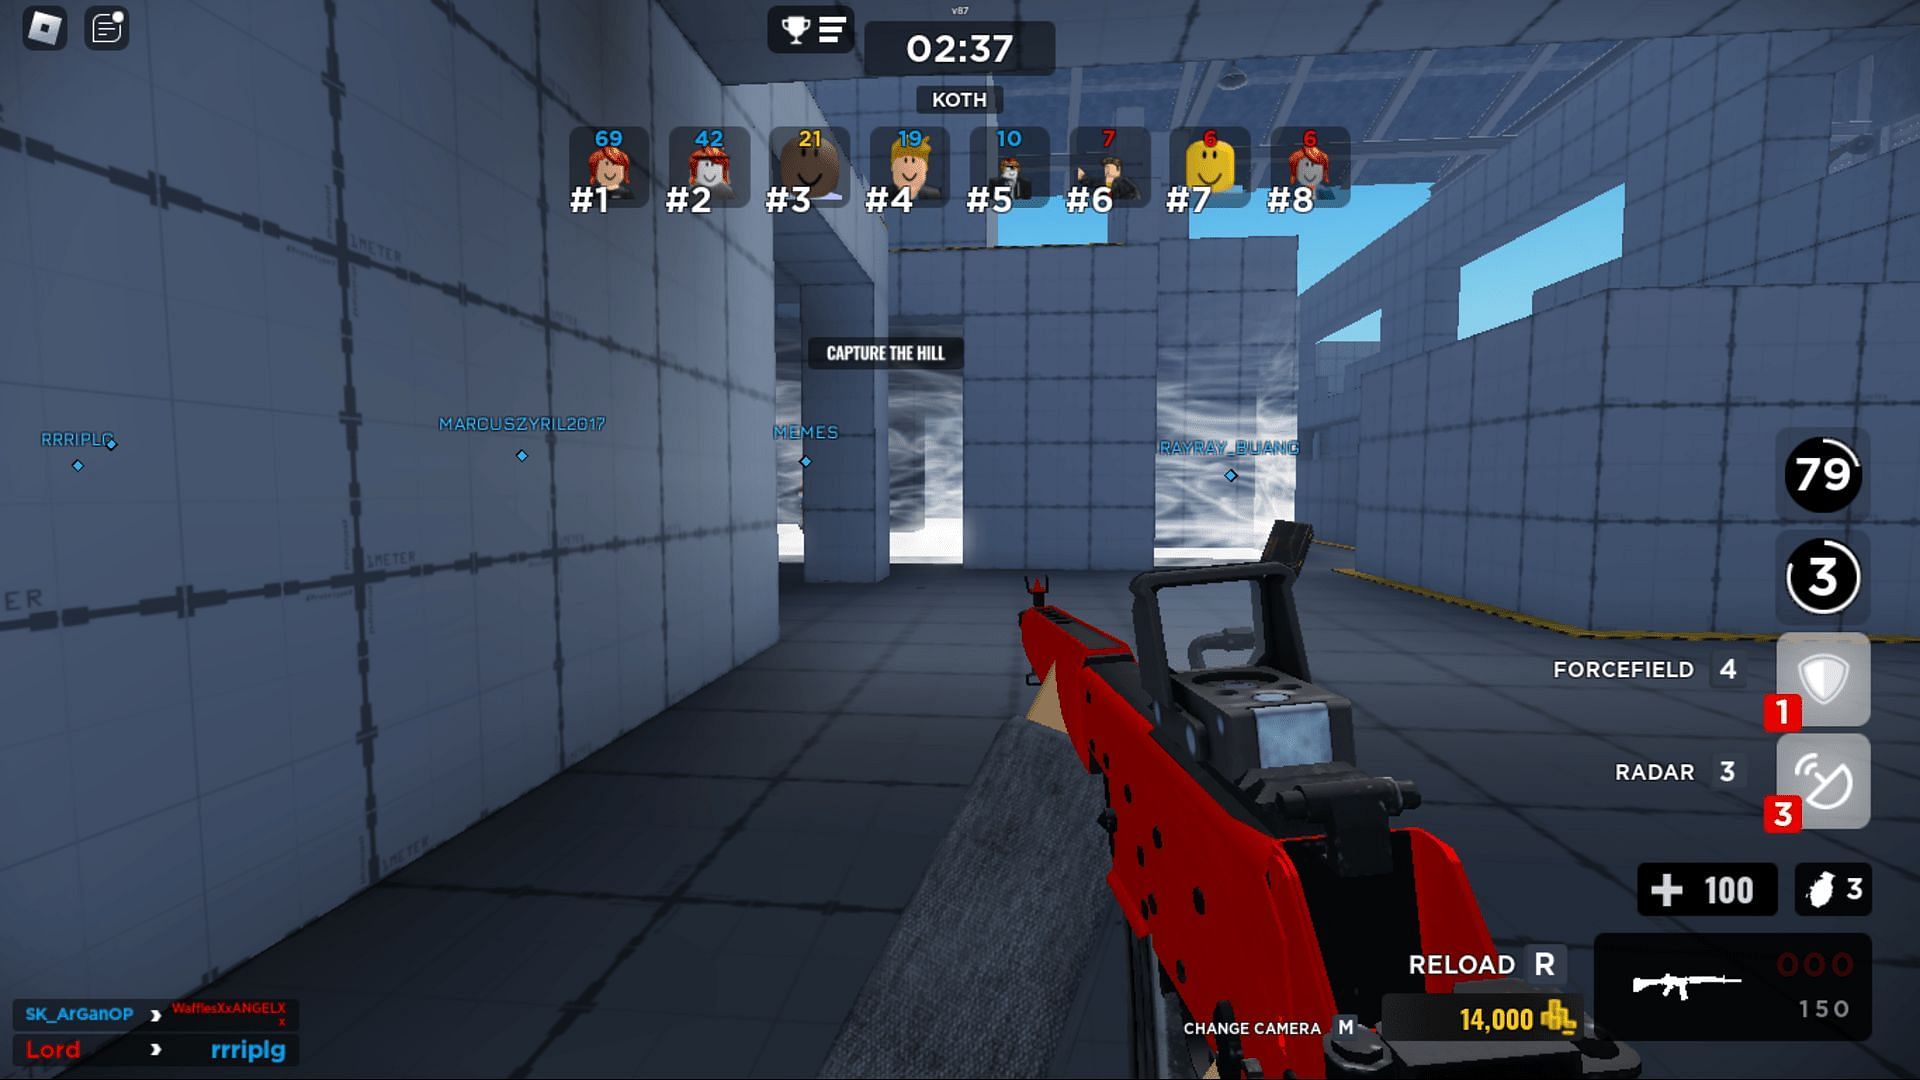 Gameplay screenshot from Gunfight Arena (Image via Roblox)